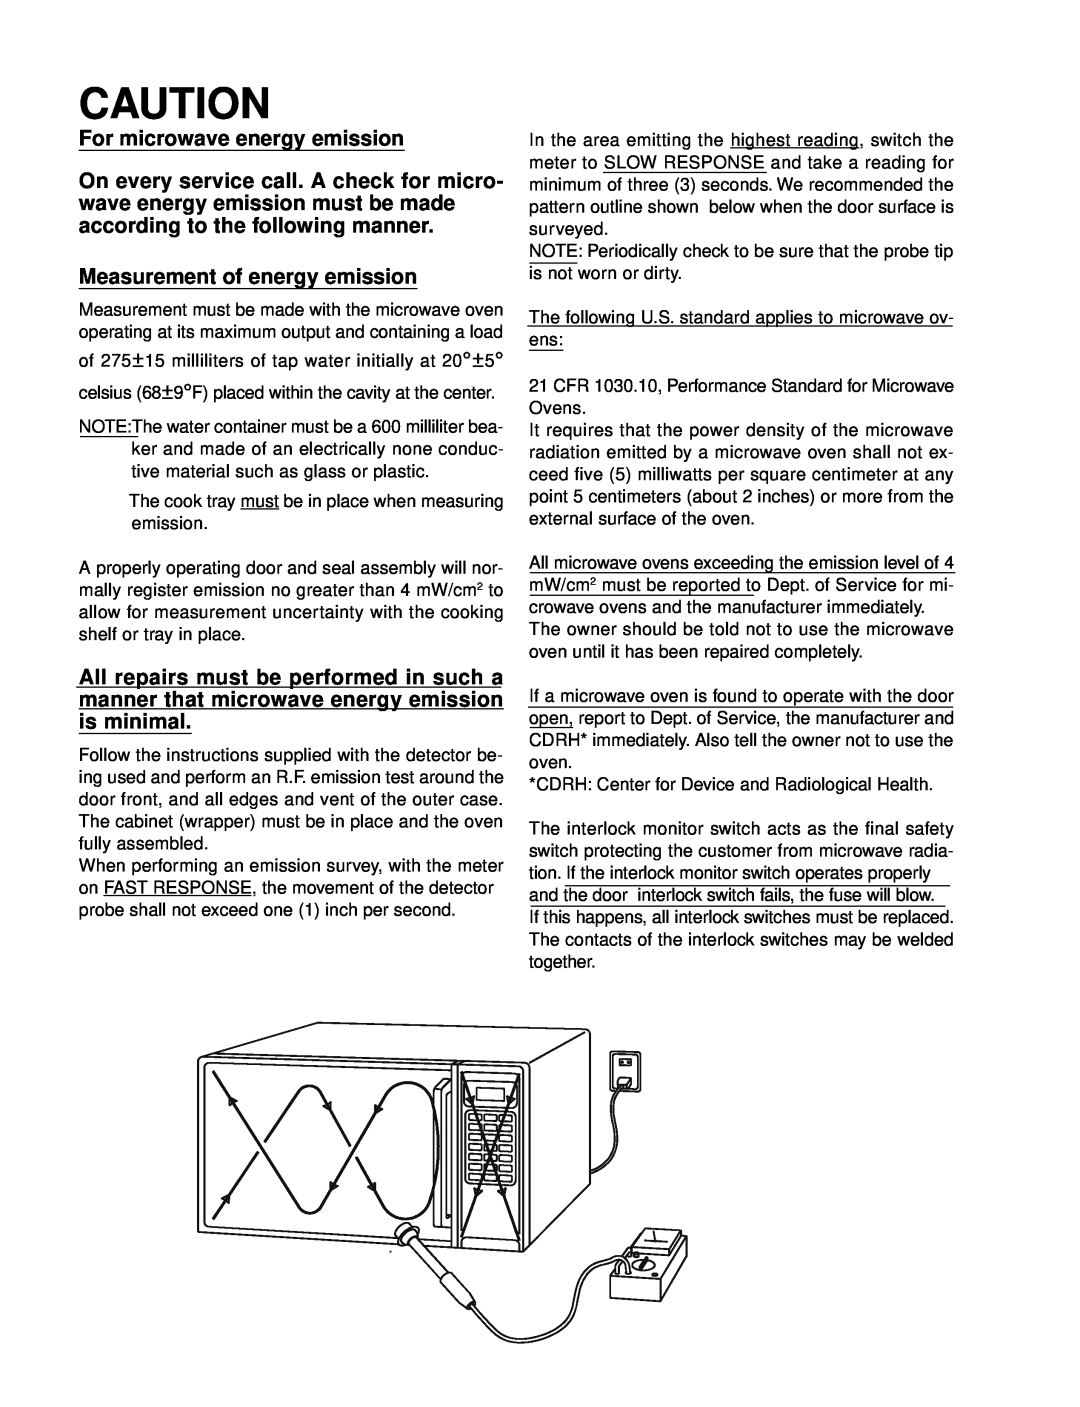 Garland EM-C180 service manual For microwave energy emission, Measurement of energy emission 